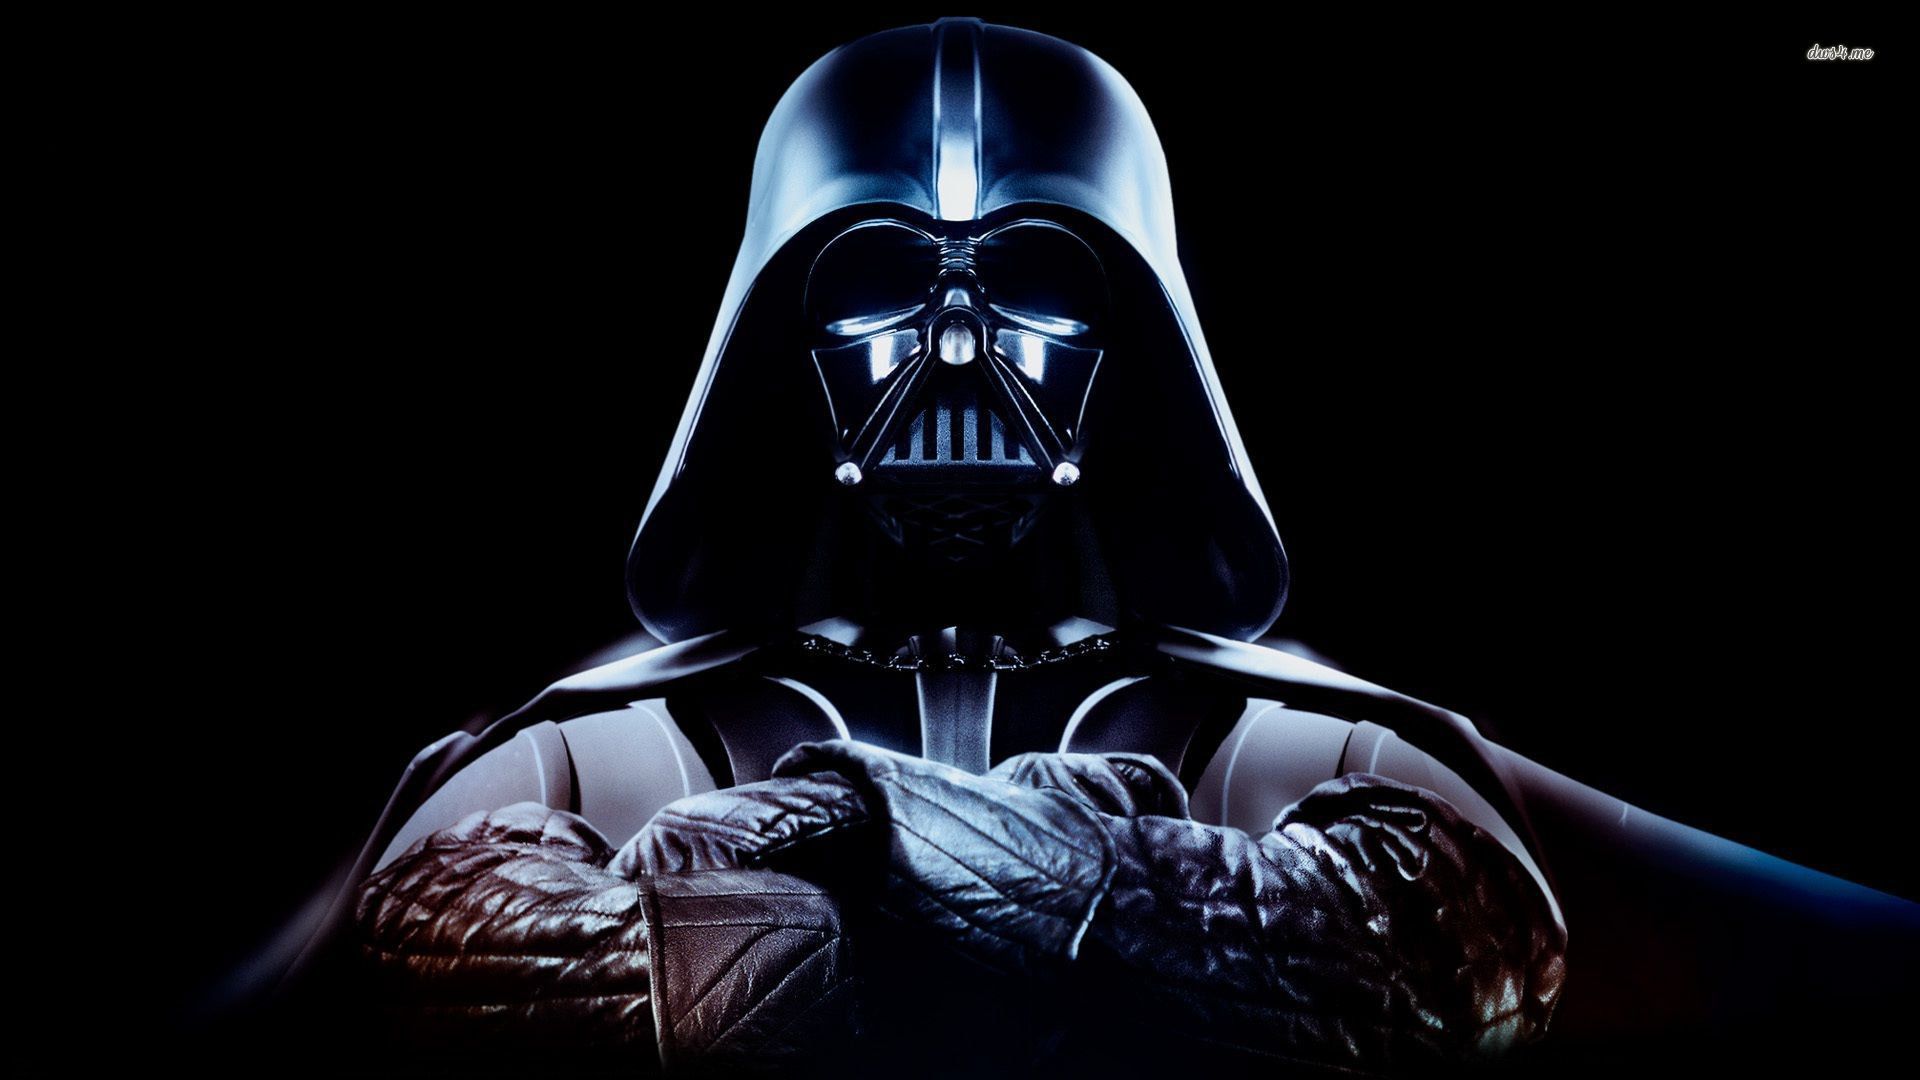 Darth Vader Wars Force Unleashed wallpaper